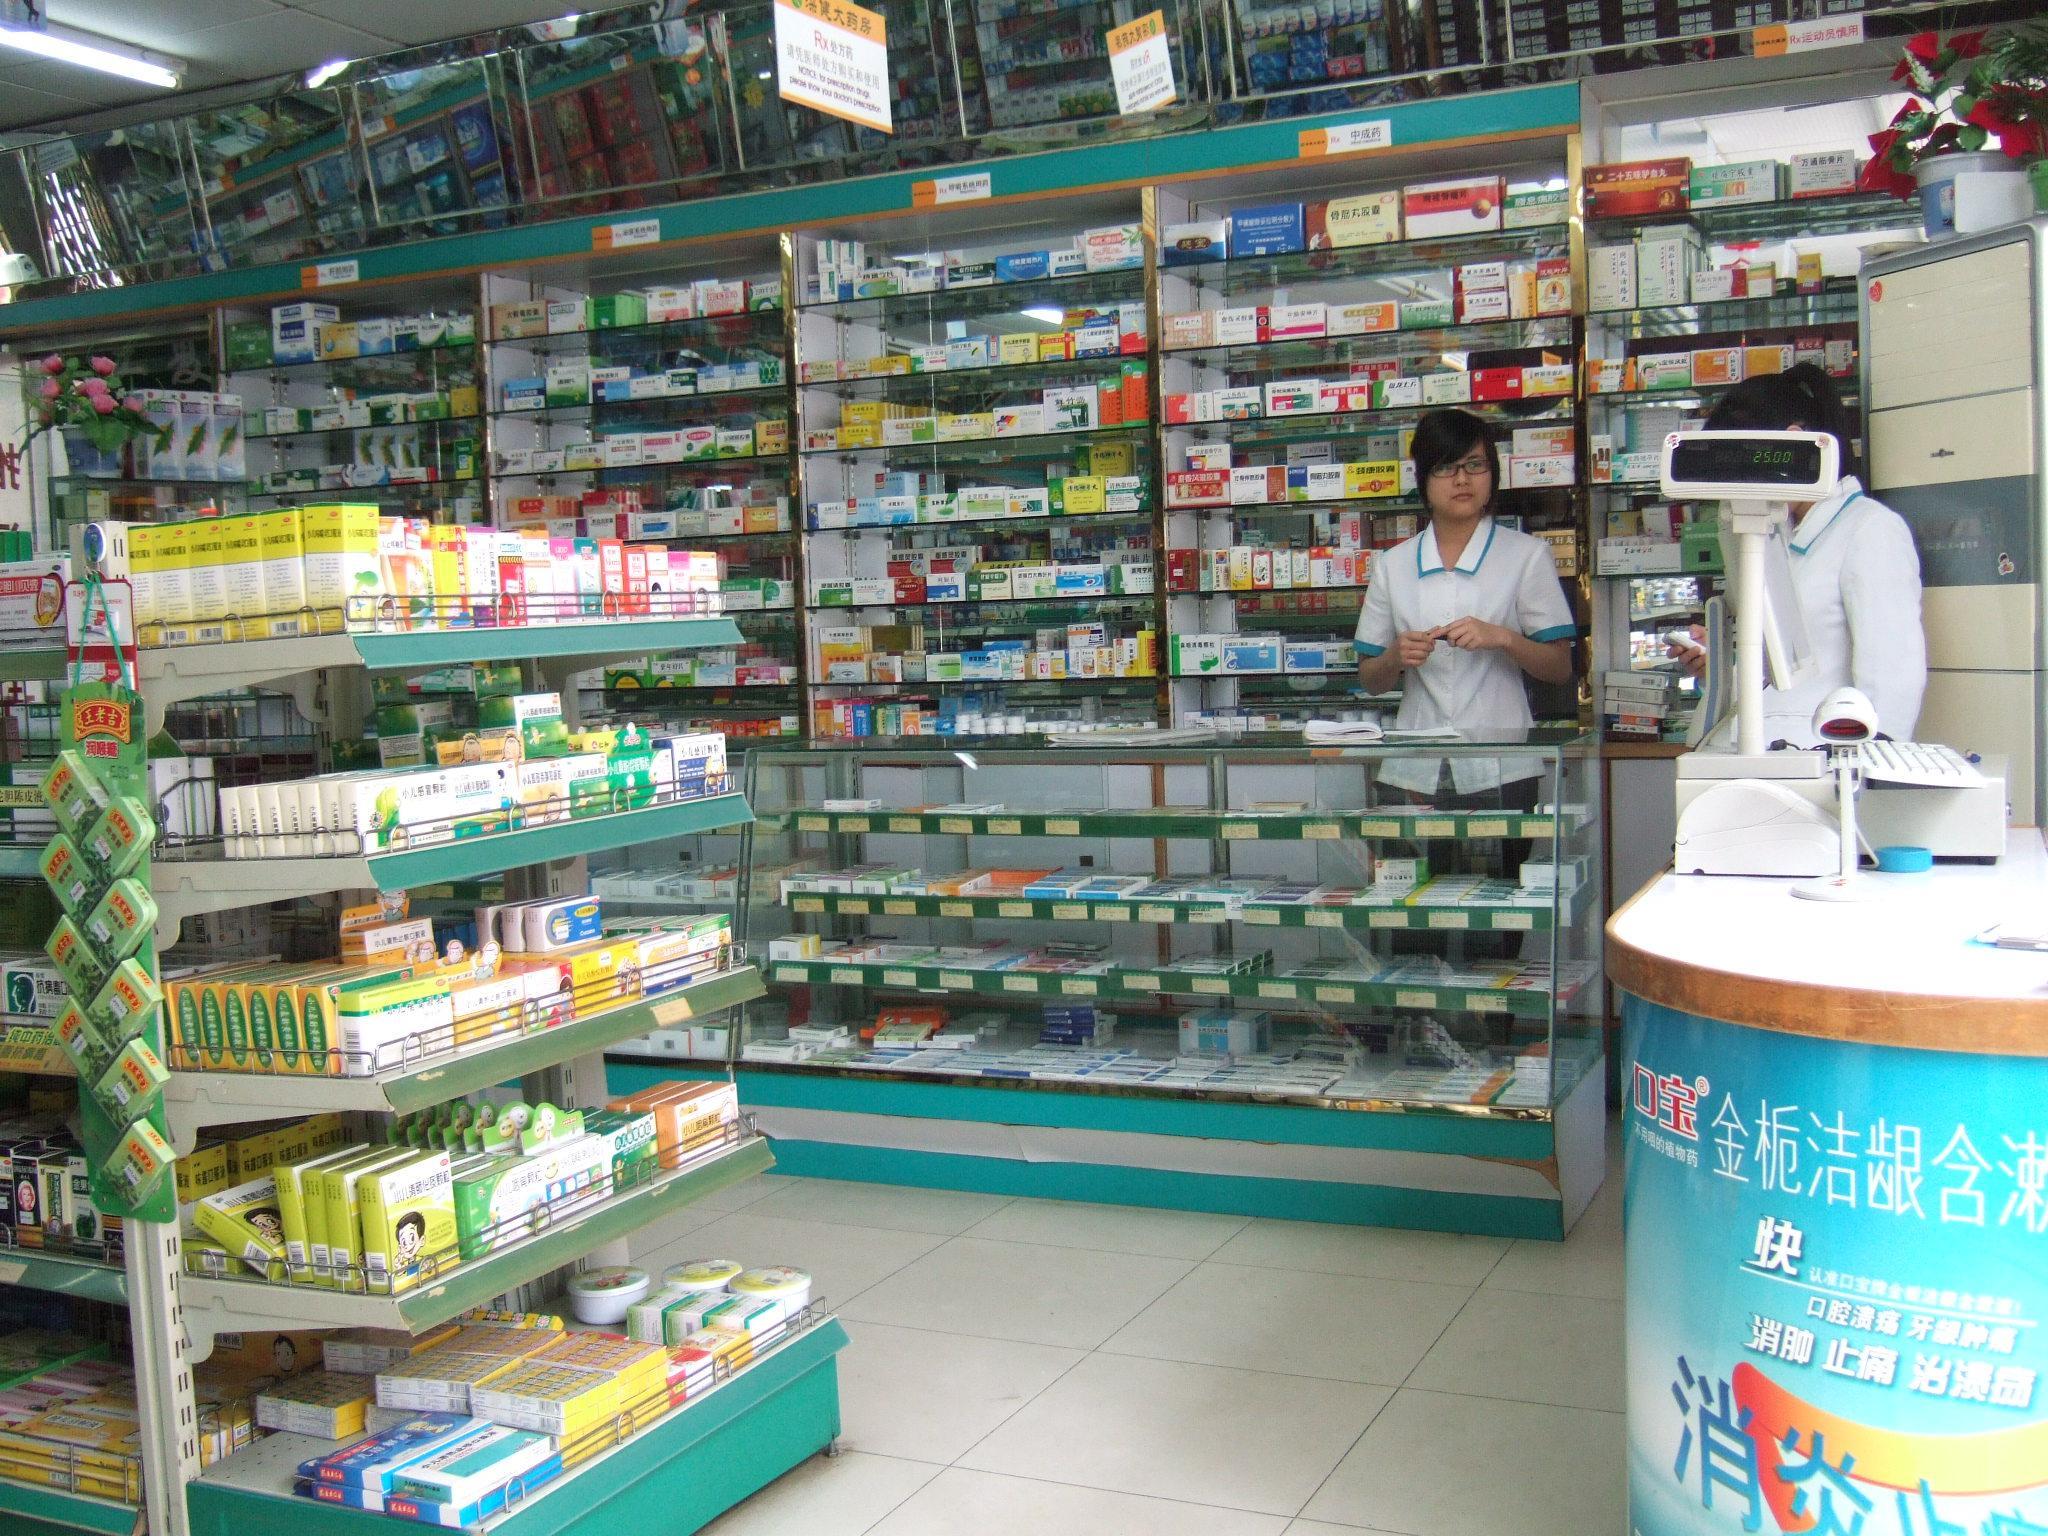 中国大街上随处可见的药店,为什么没有亏本而倒闭?